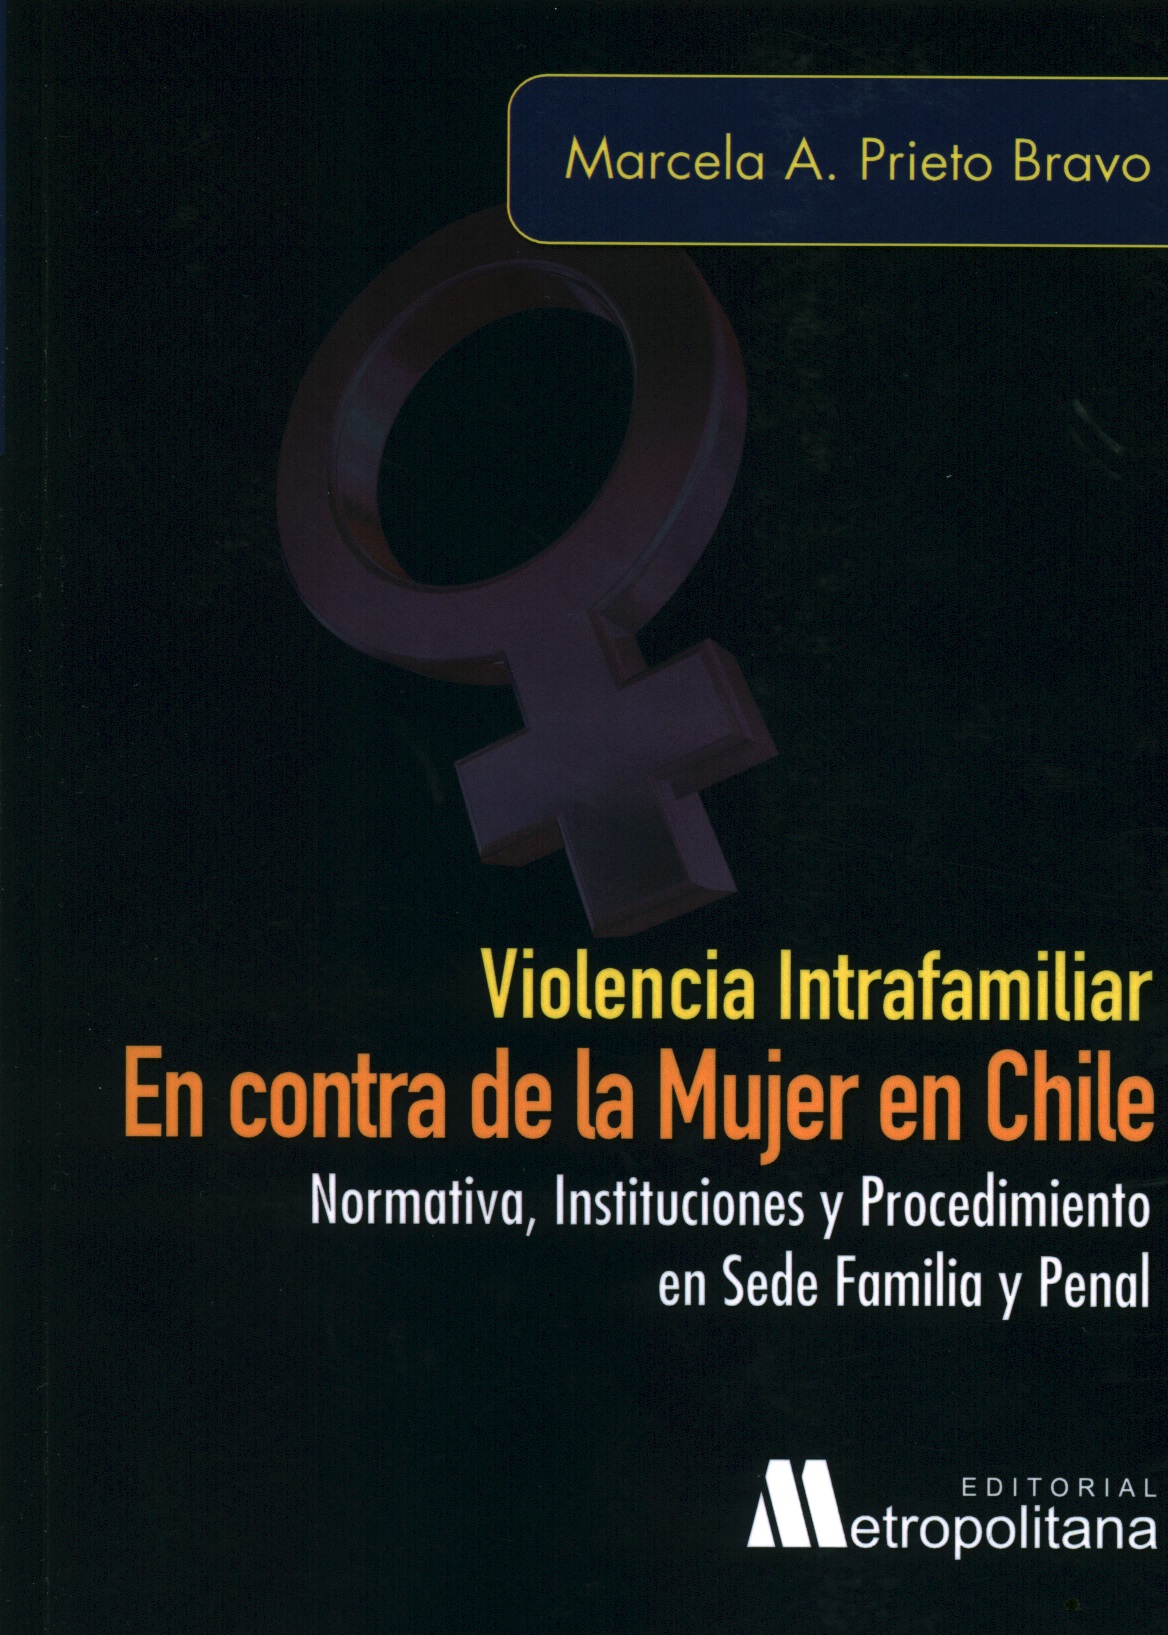 Violencia intrafamiliar en contra de la mujer en Chile. Normativa, instituciones y procedimiento en sede familia y penal